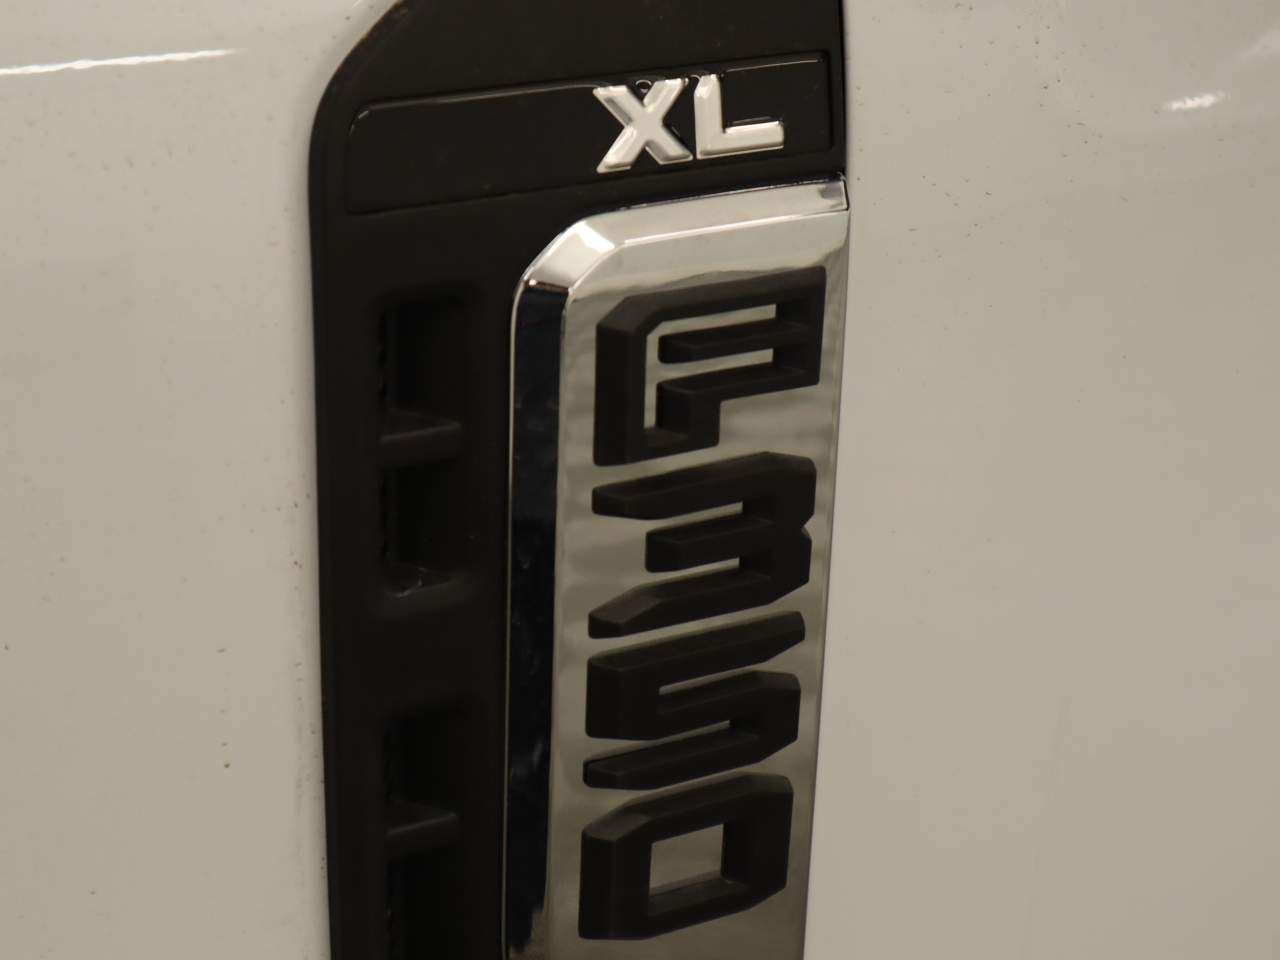 2023 Ford F-350 Super Duty DRW Crew Cab XL